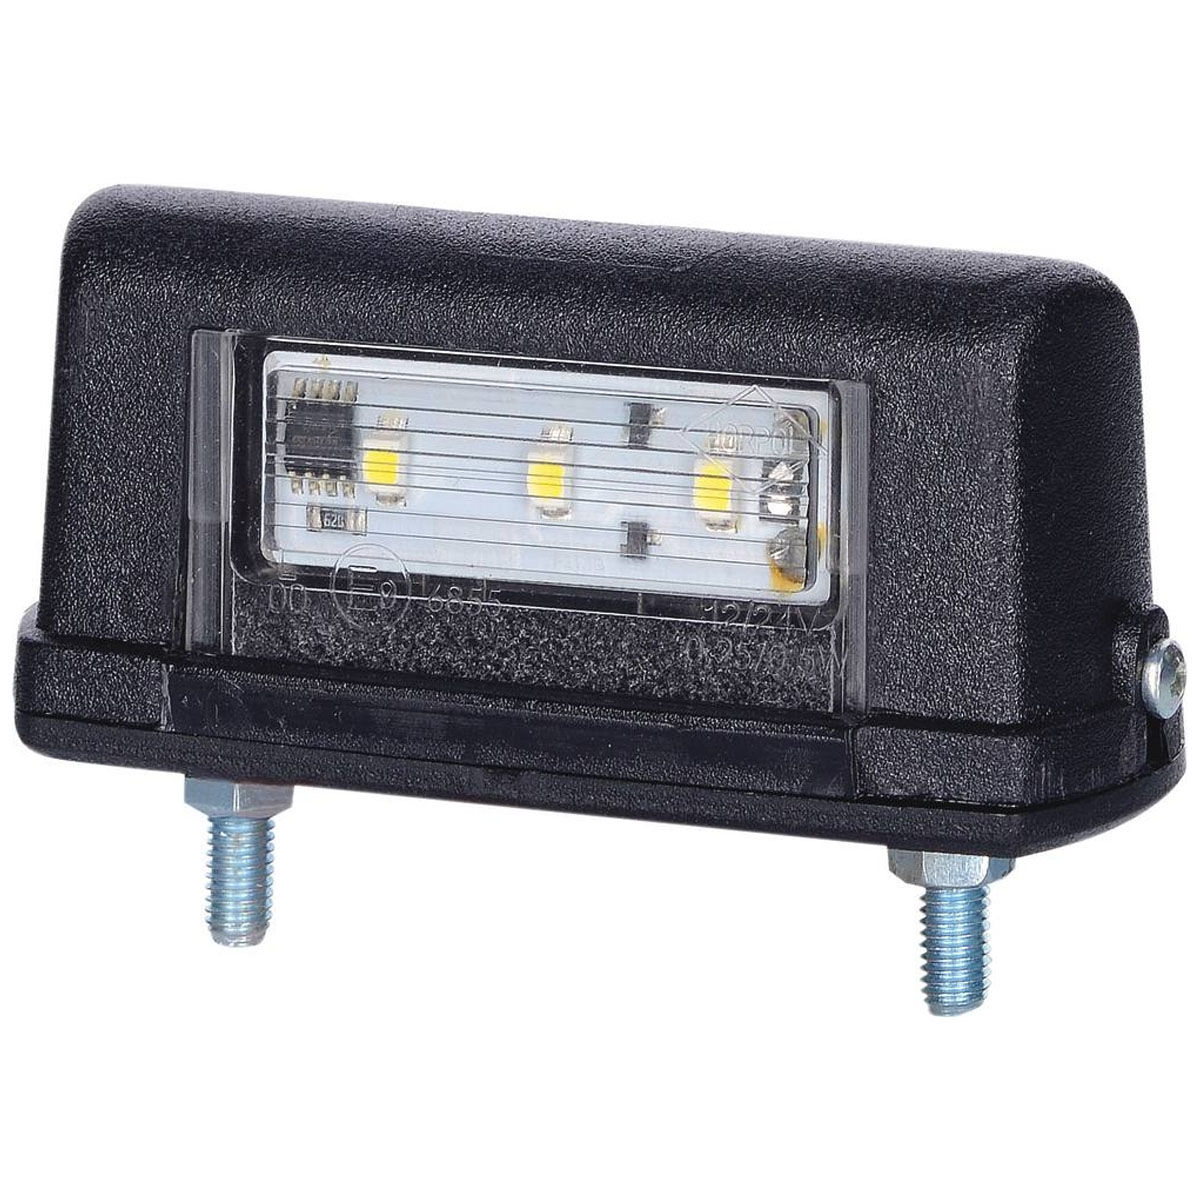 Feu éclaireur de plaque LED 12/24V, 82,6x38,7 mm, entraxe 52,5 mm